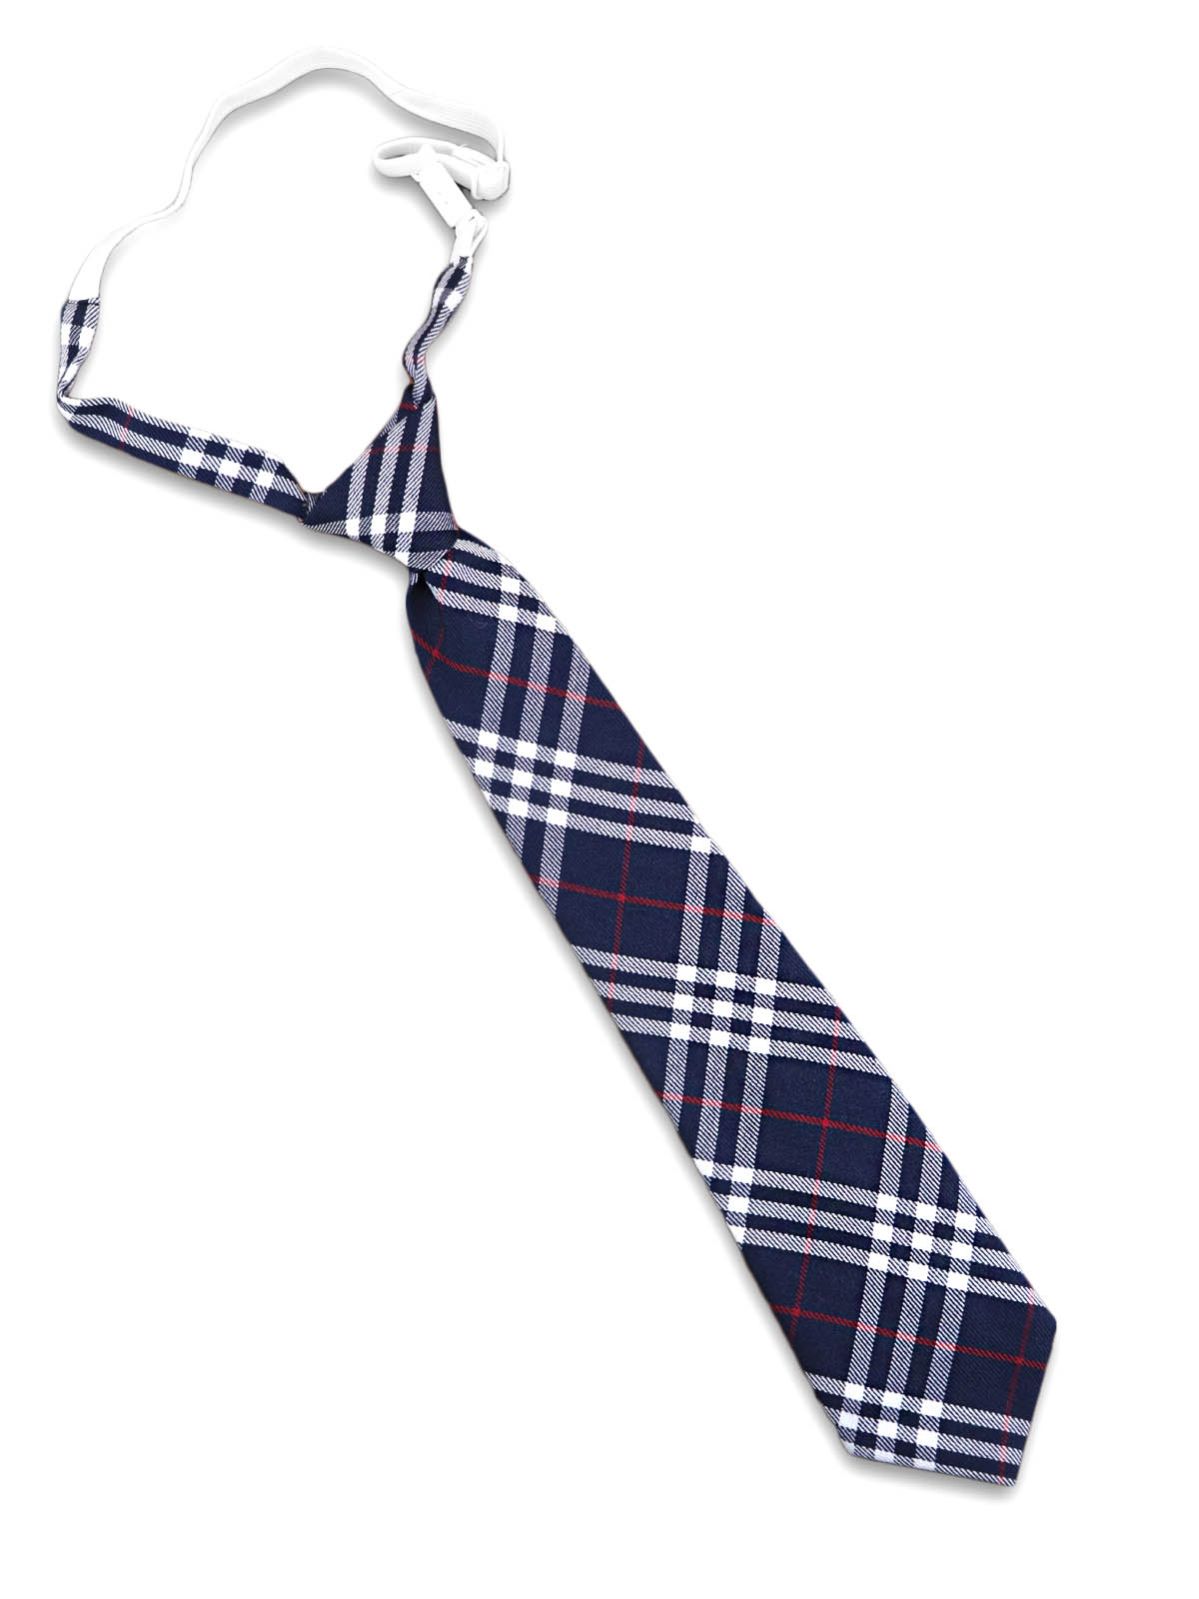 Описание Школьный галстук на резинке синий в бело-красную полоску: Размер - Длина галстука 35 см, ширина (в самом широком месте) 7 см, Цвет - Синий, белый, красный, Страна производитель - Турция;